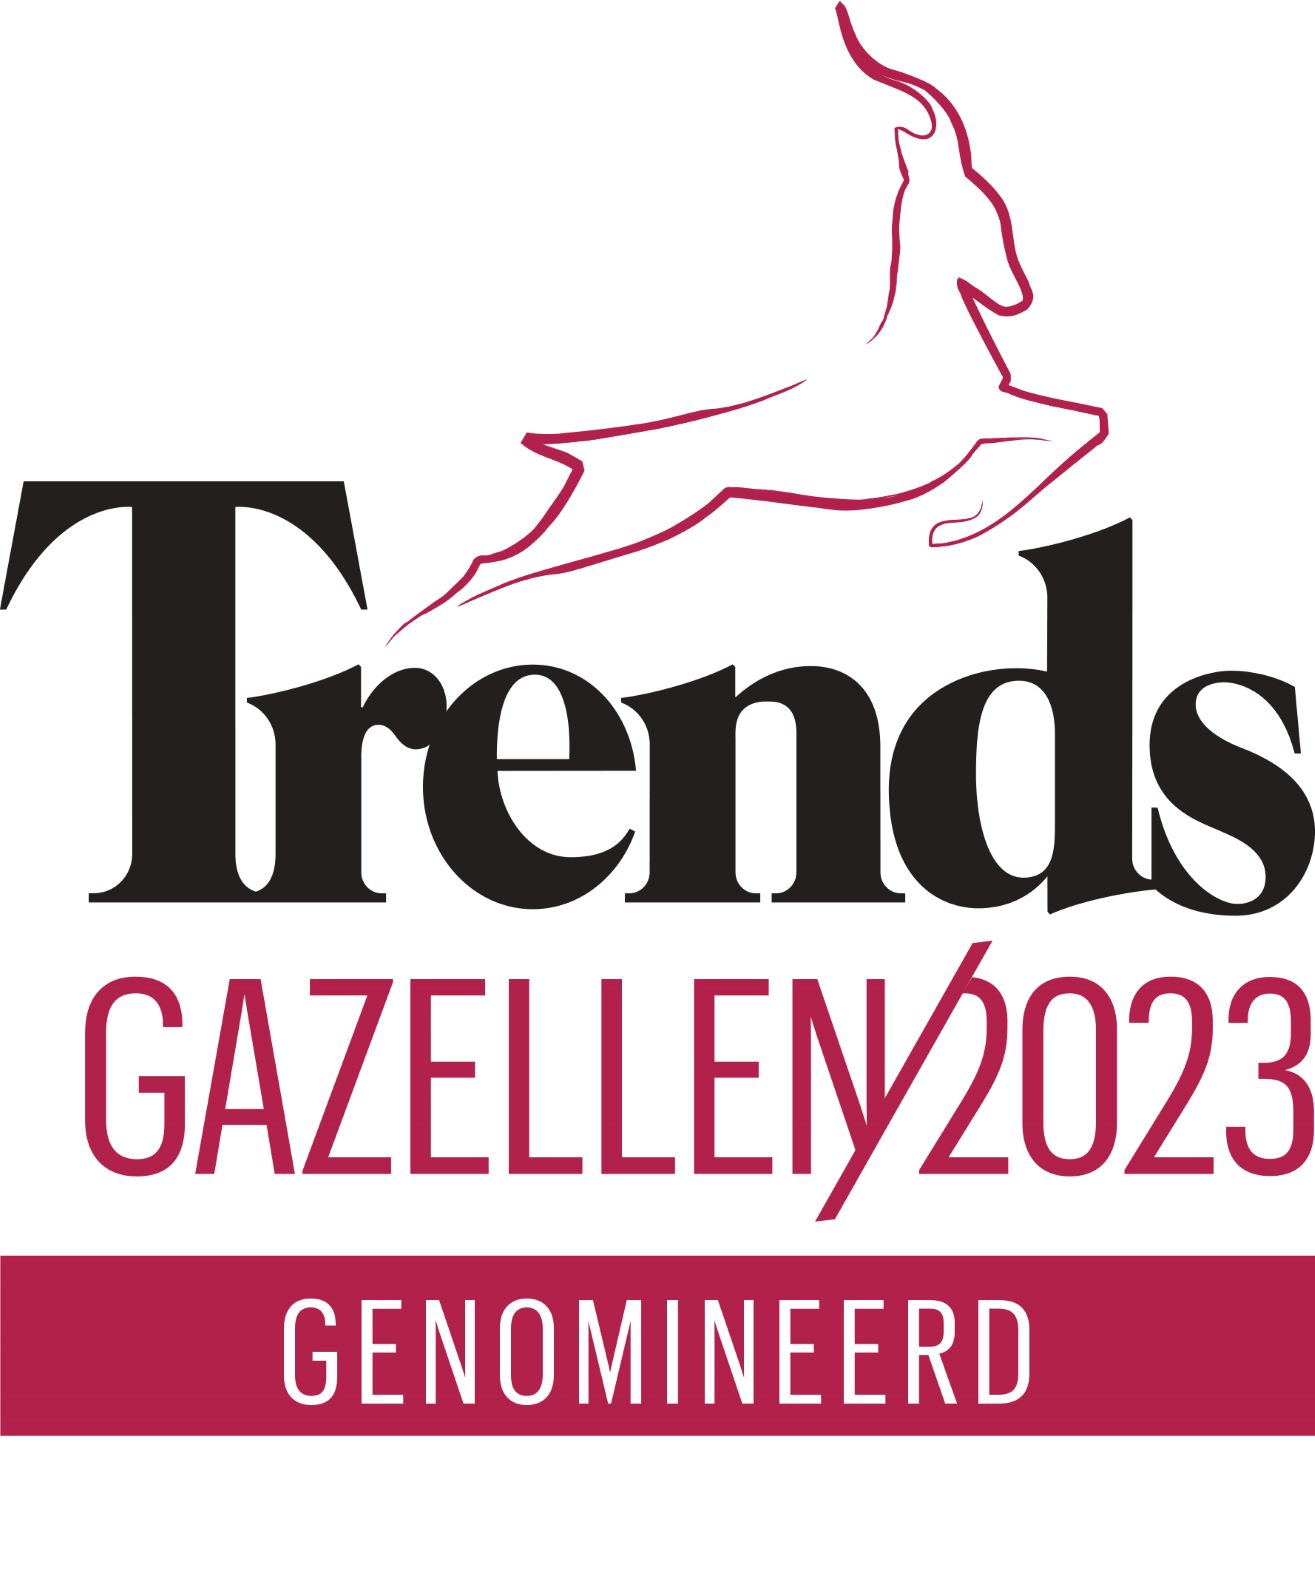 Trends Gazellen nominee 2023